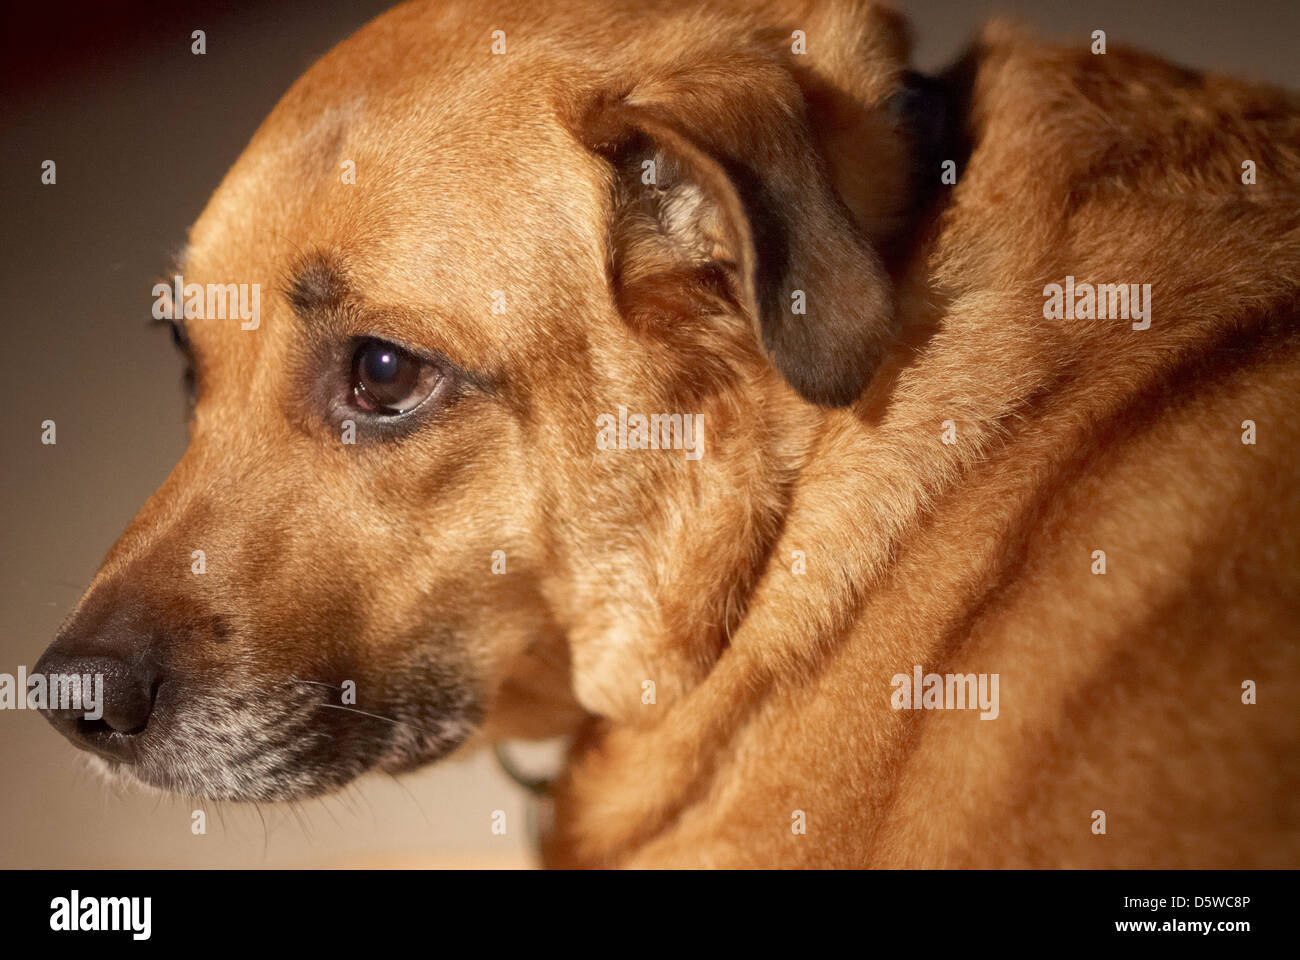 Photograph of a sad faced Labrador dog Stock Photo